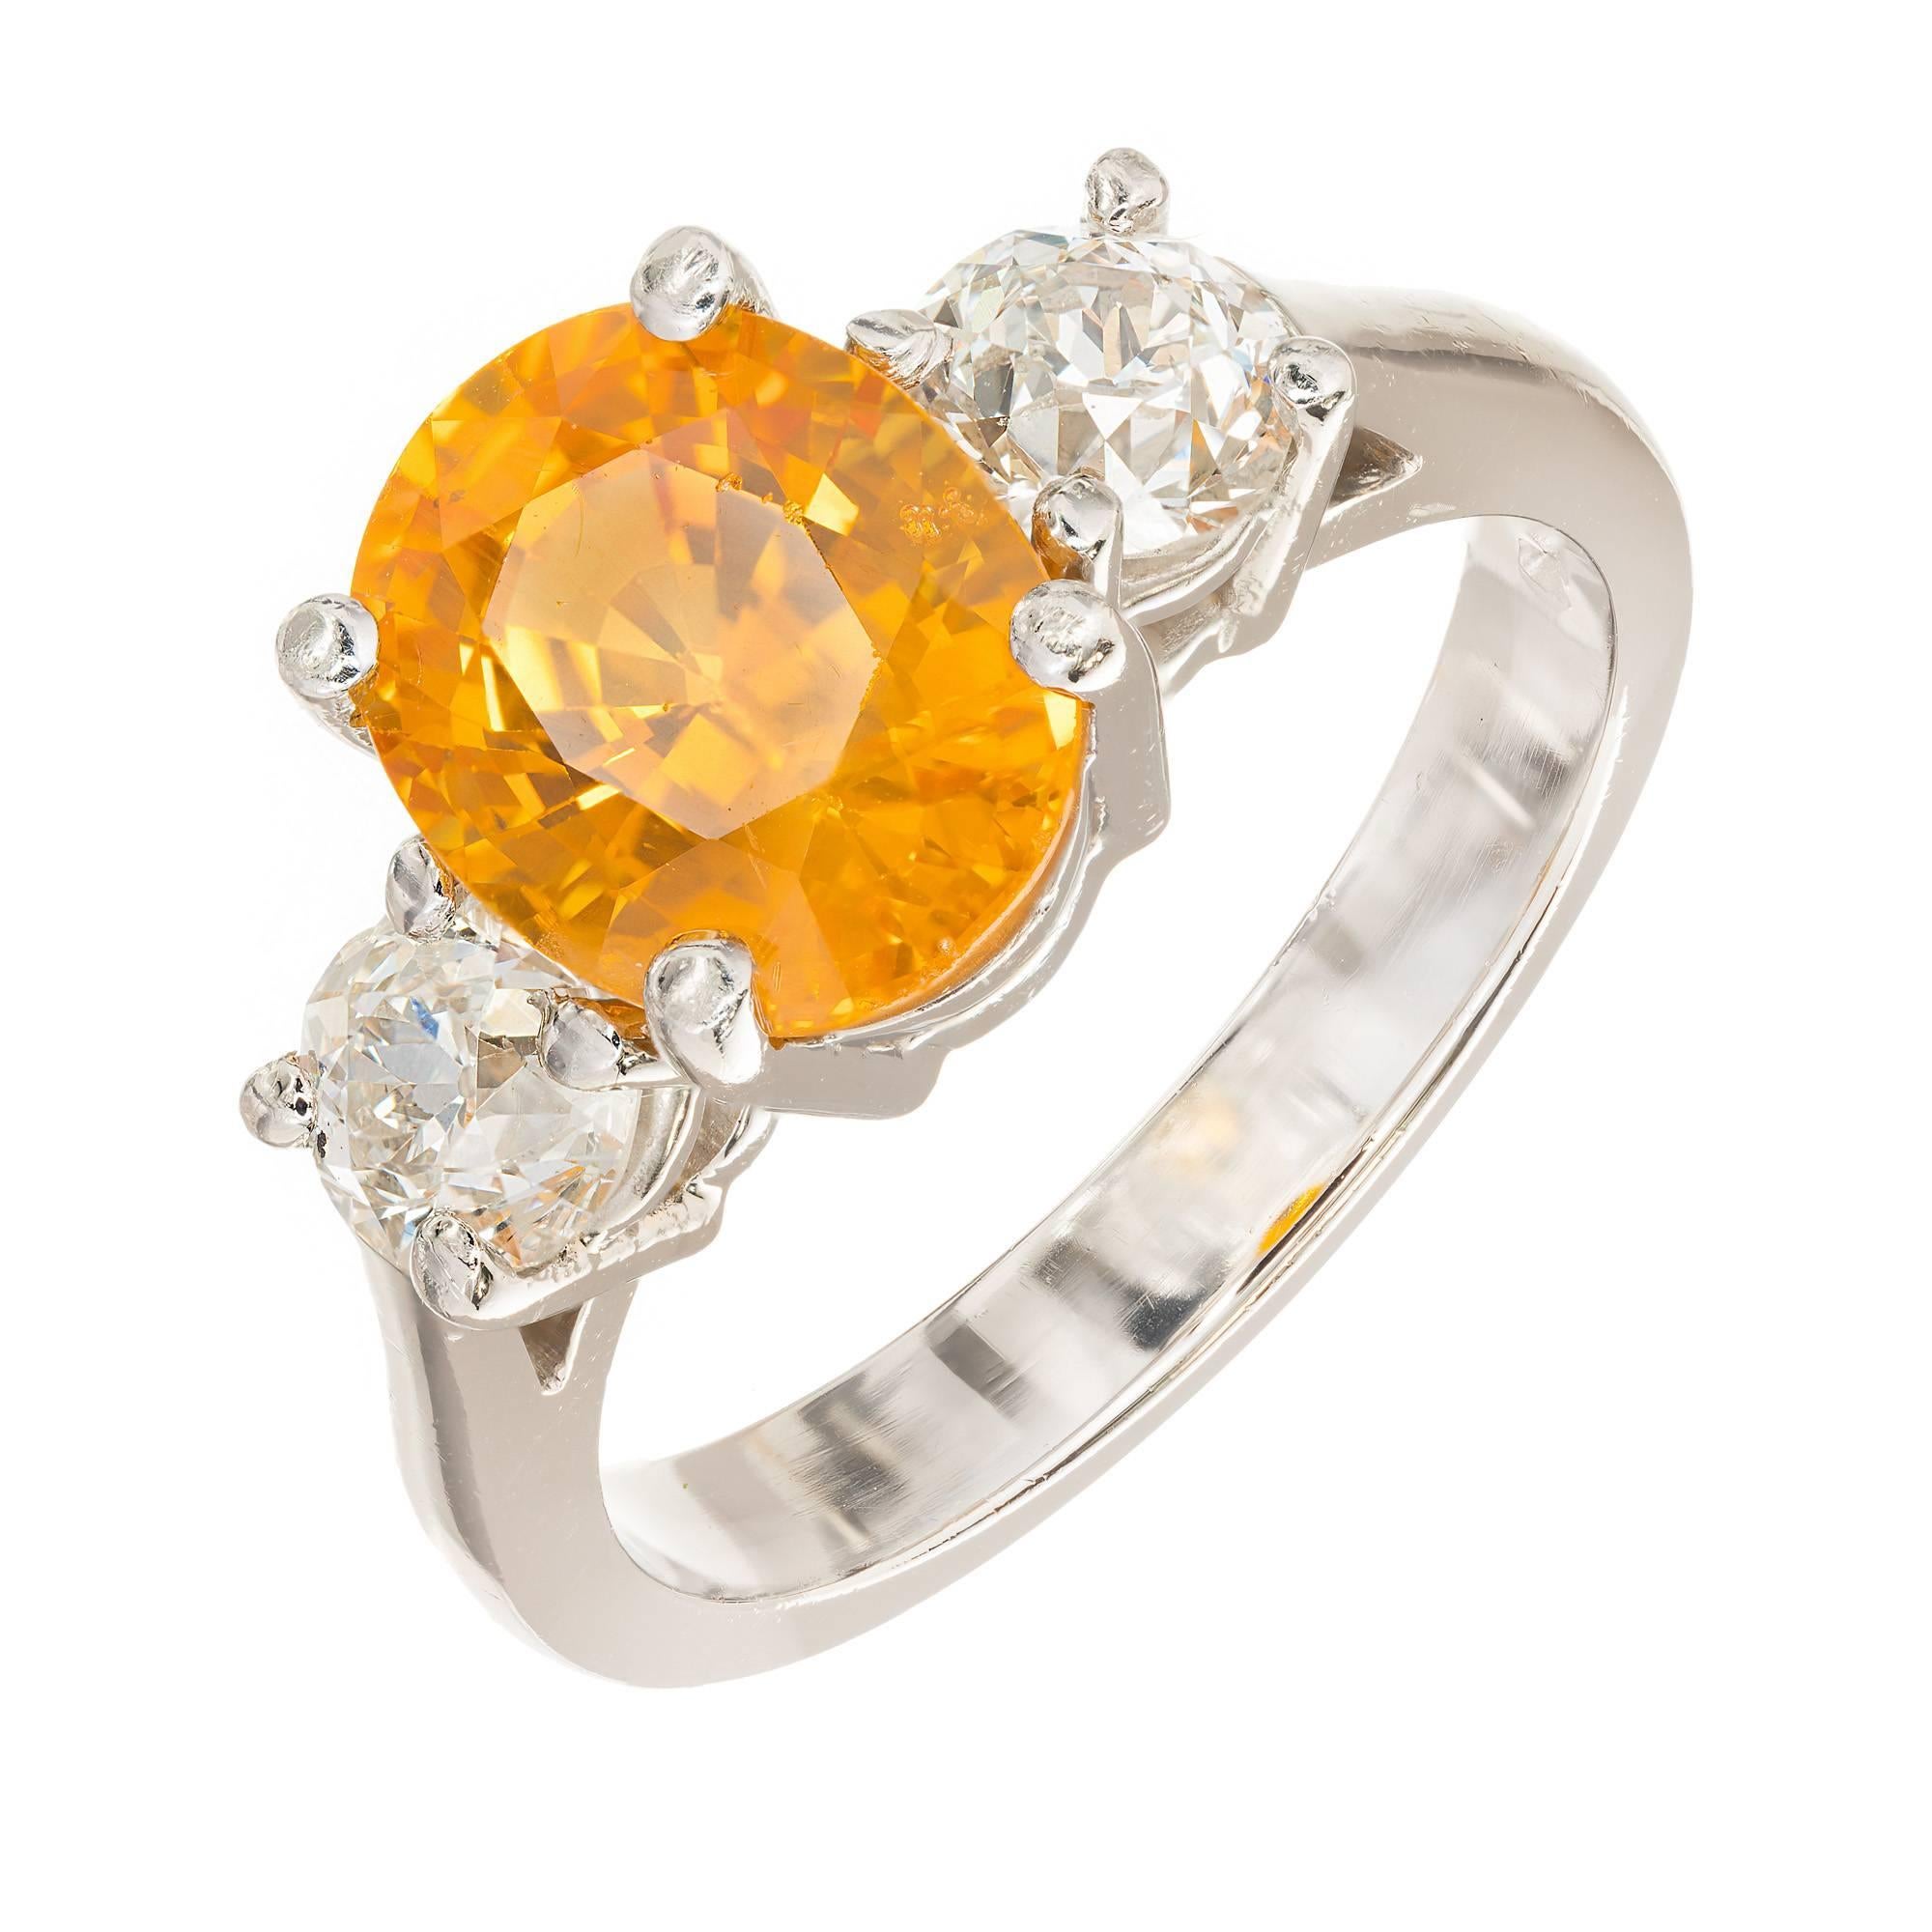 Verlobungsring aus Platin mit 3,29 Karat orangefarbenem Saphir und Diamant von Peter Suchy